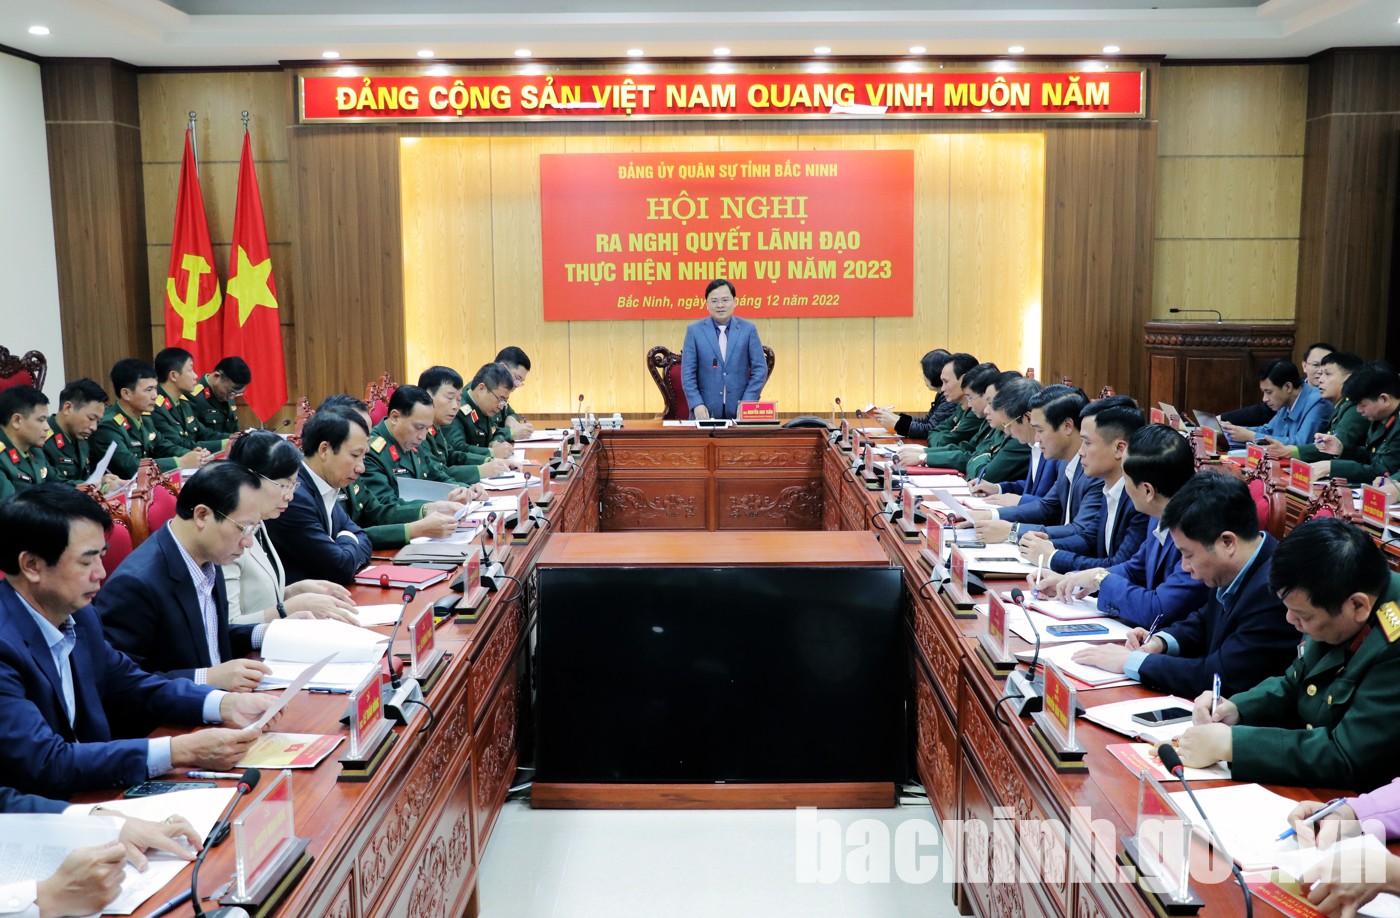 Đảng ủy Quân sự tỉnh Bắc Ninh triển khai nhiệm vụ năm 2023